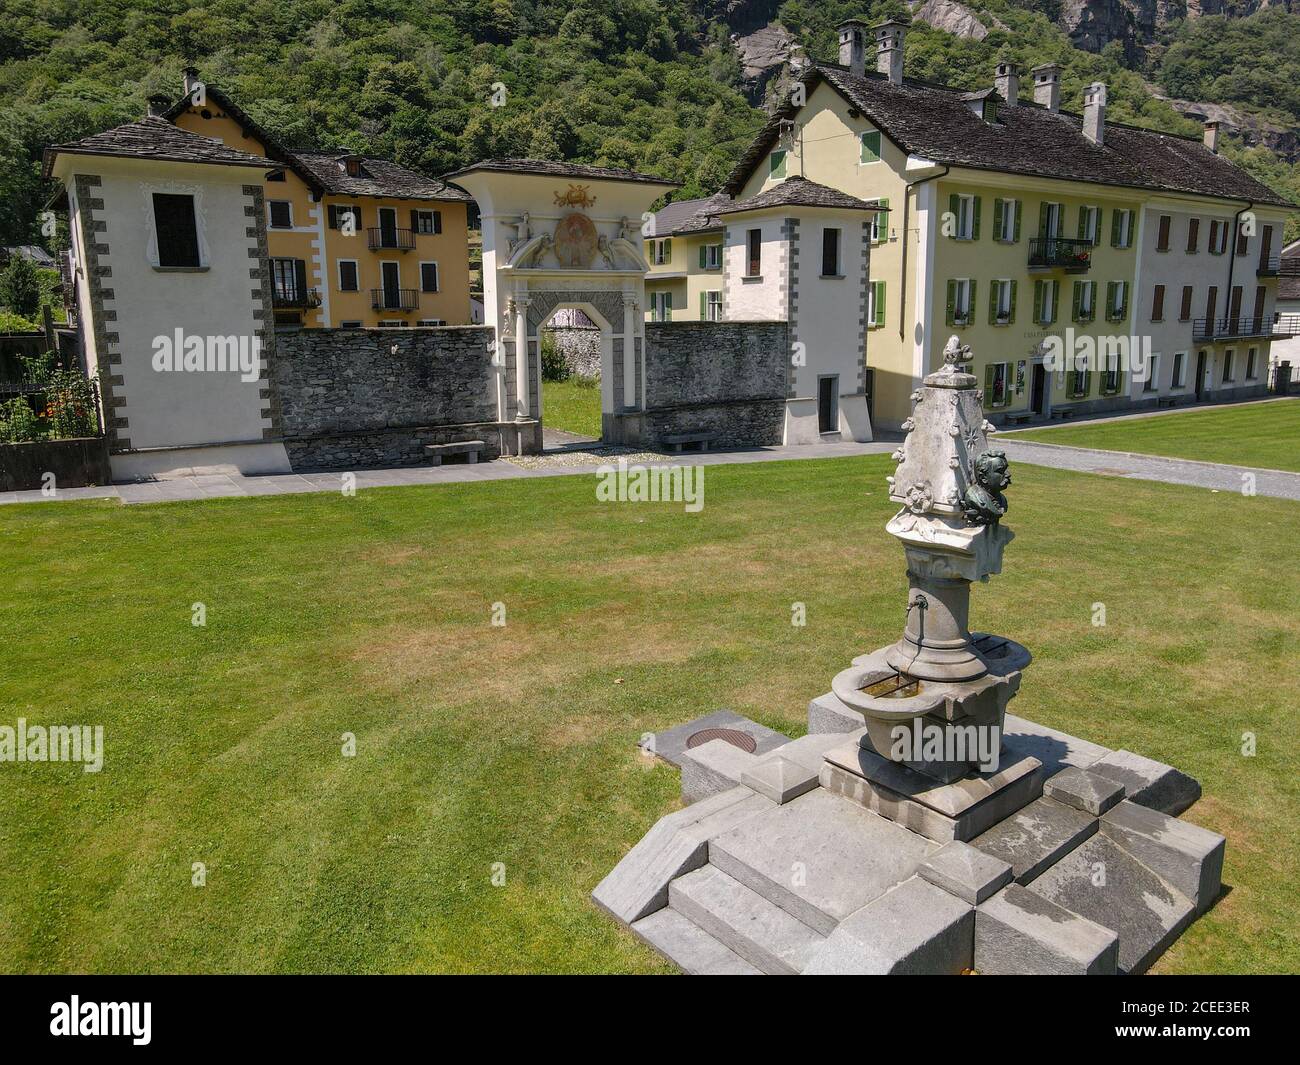 Cevio, Suiza - 8 de julio de 2020: El pueblo de Cevio en el valle de Maggia en la parte italiana de Suiza Foto de stock